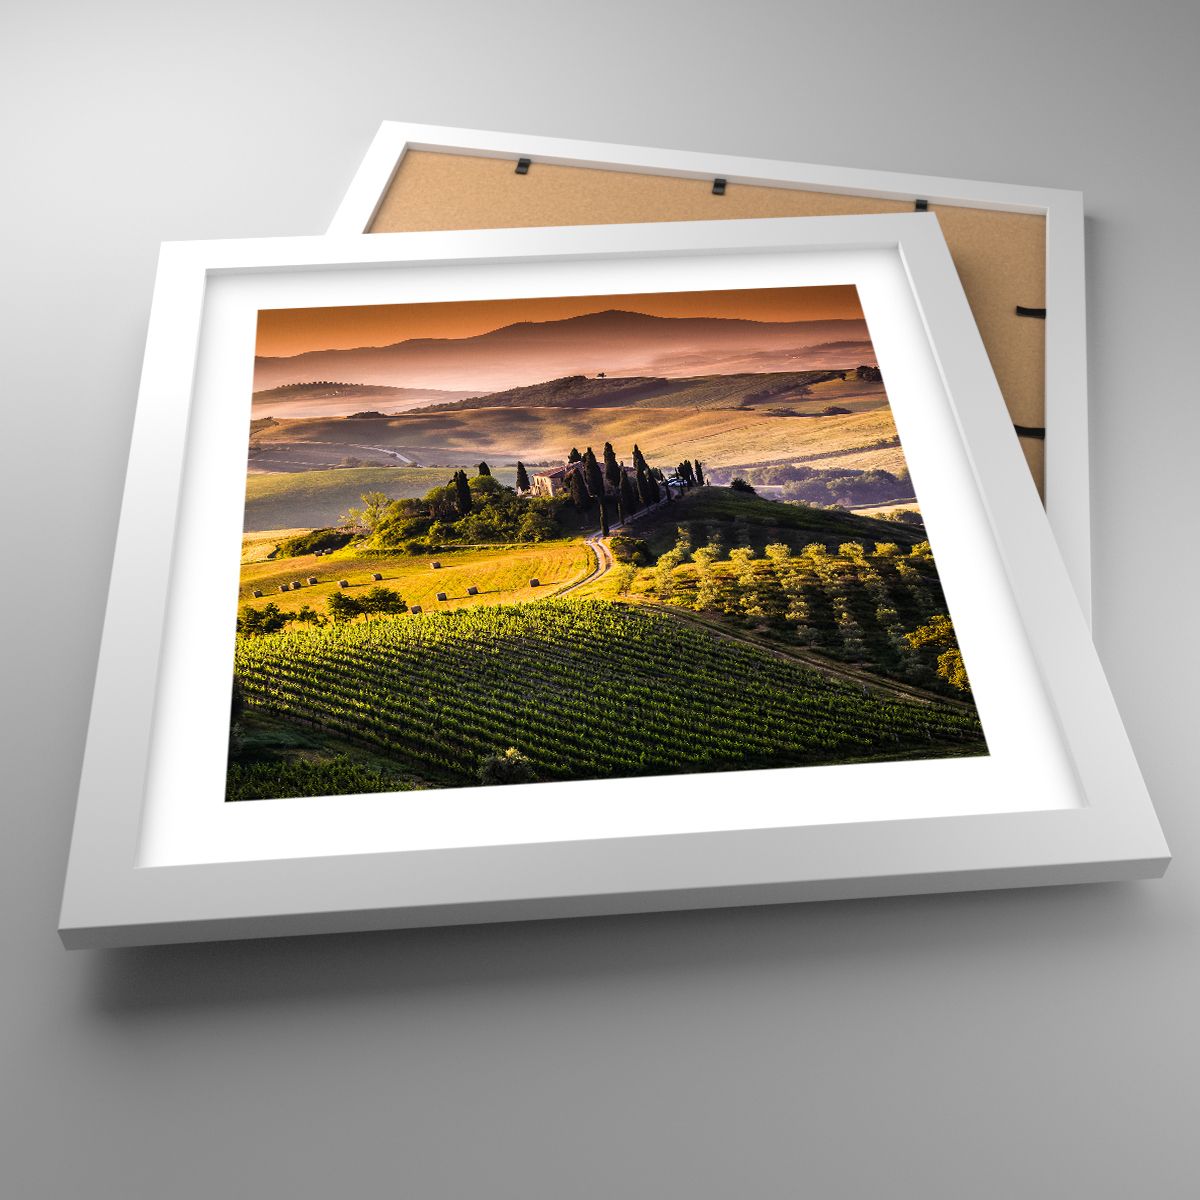 Affiche Paysage, Affiche Toscane, Affiche Vignobles, Affiche Voyages, Affiche Italie